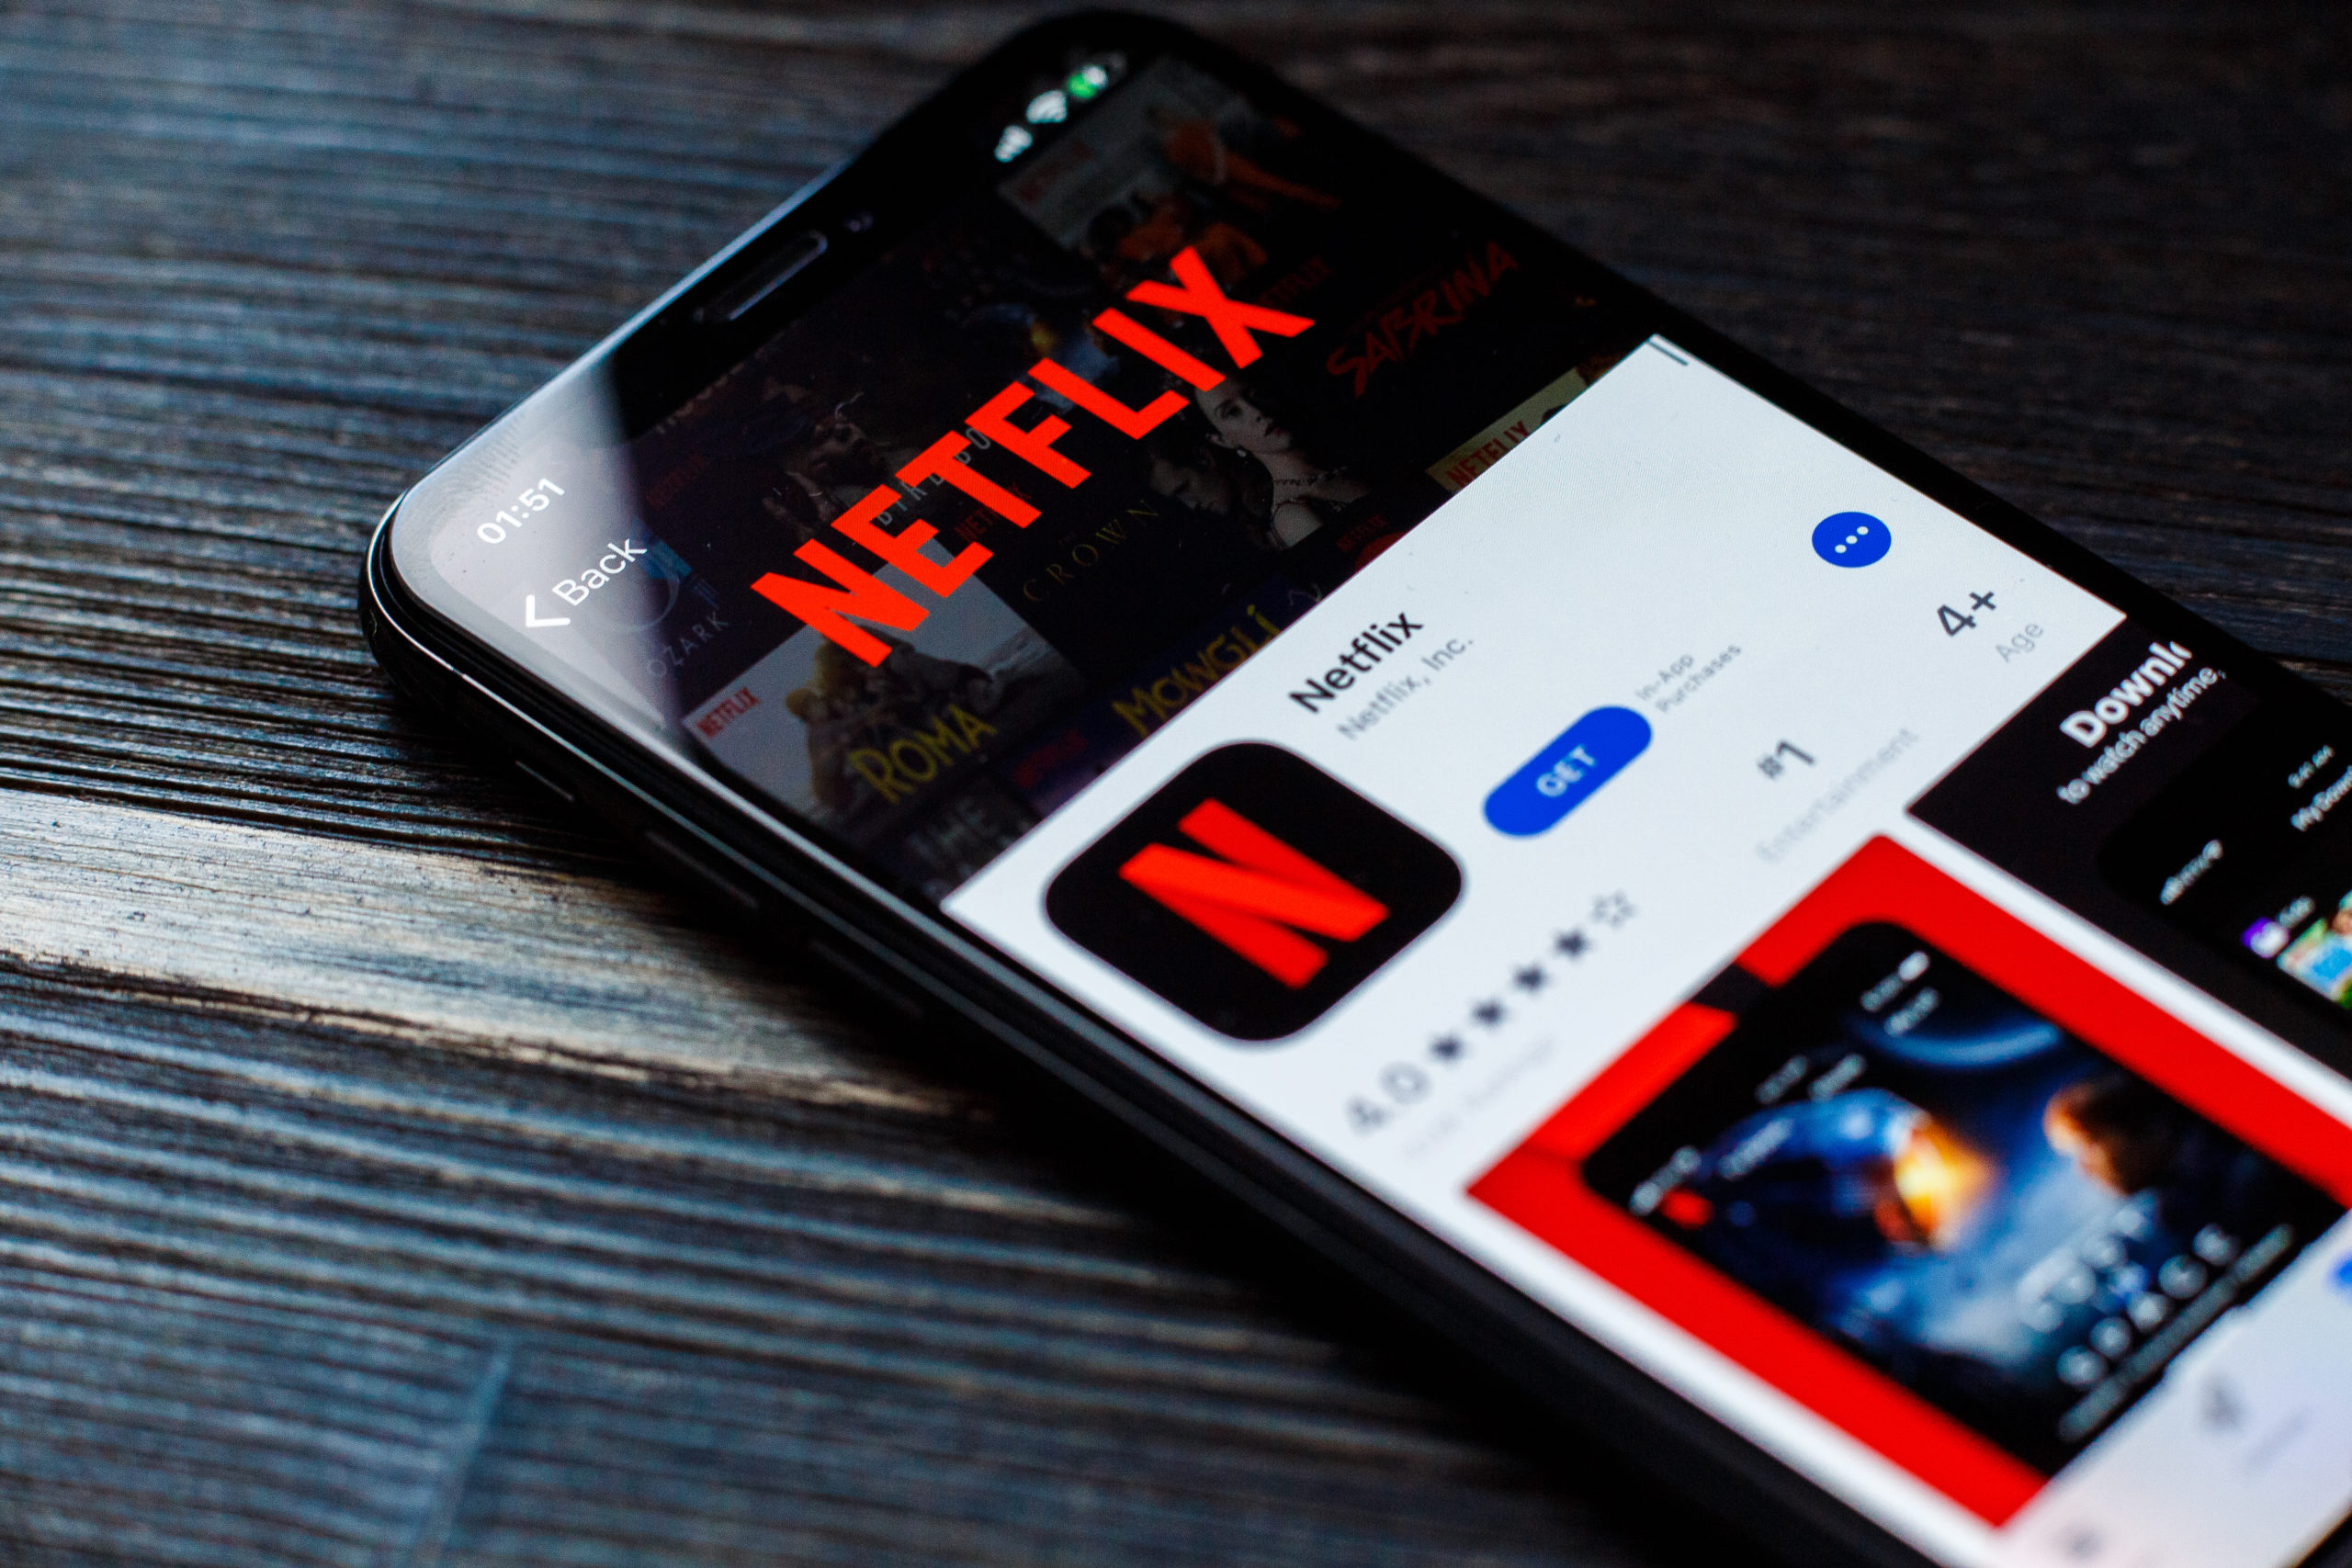 Netflix: entenda como vai funcionar a taxa de R$ 12,90